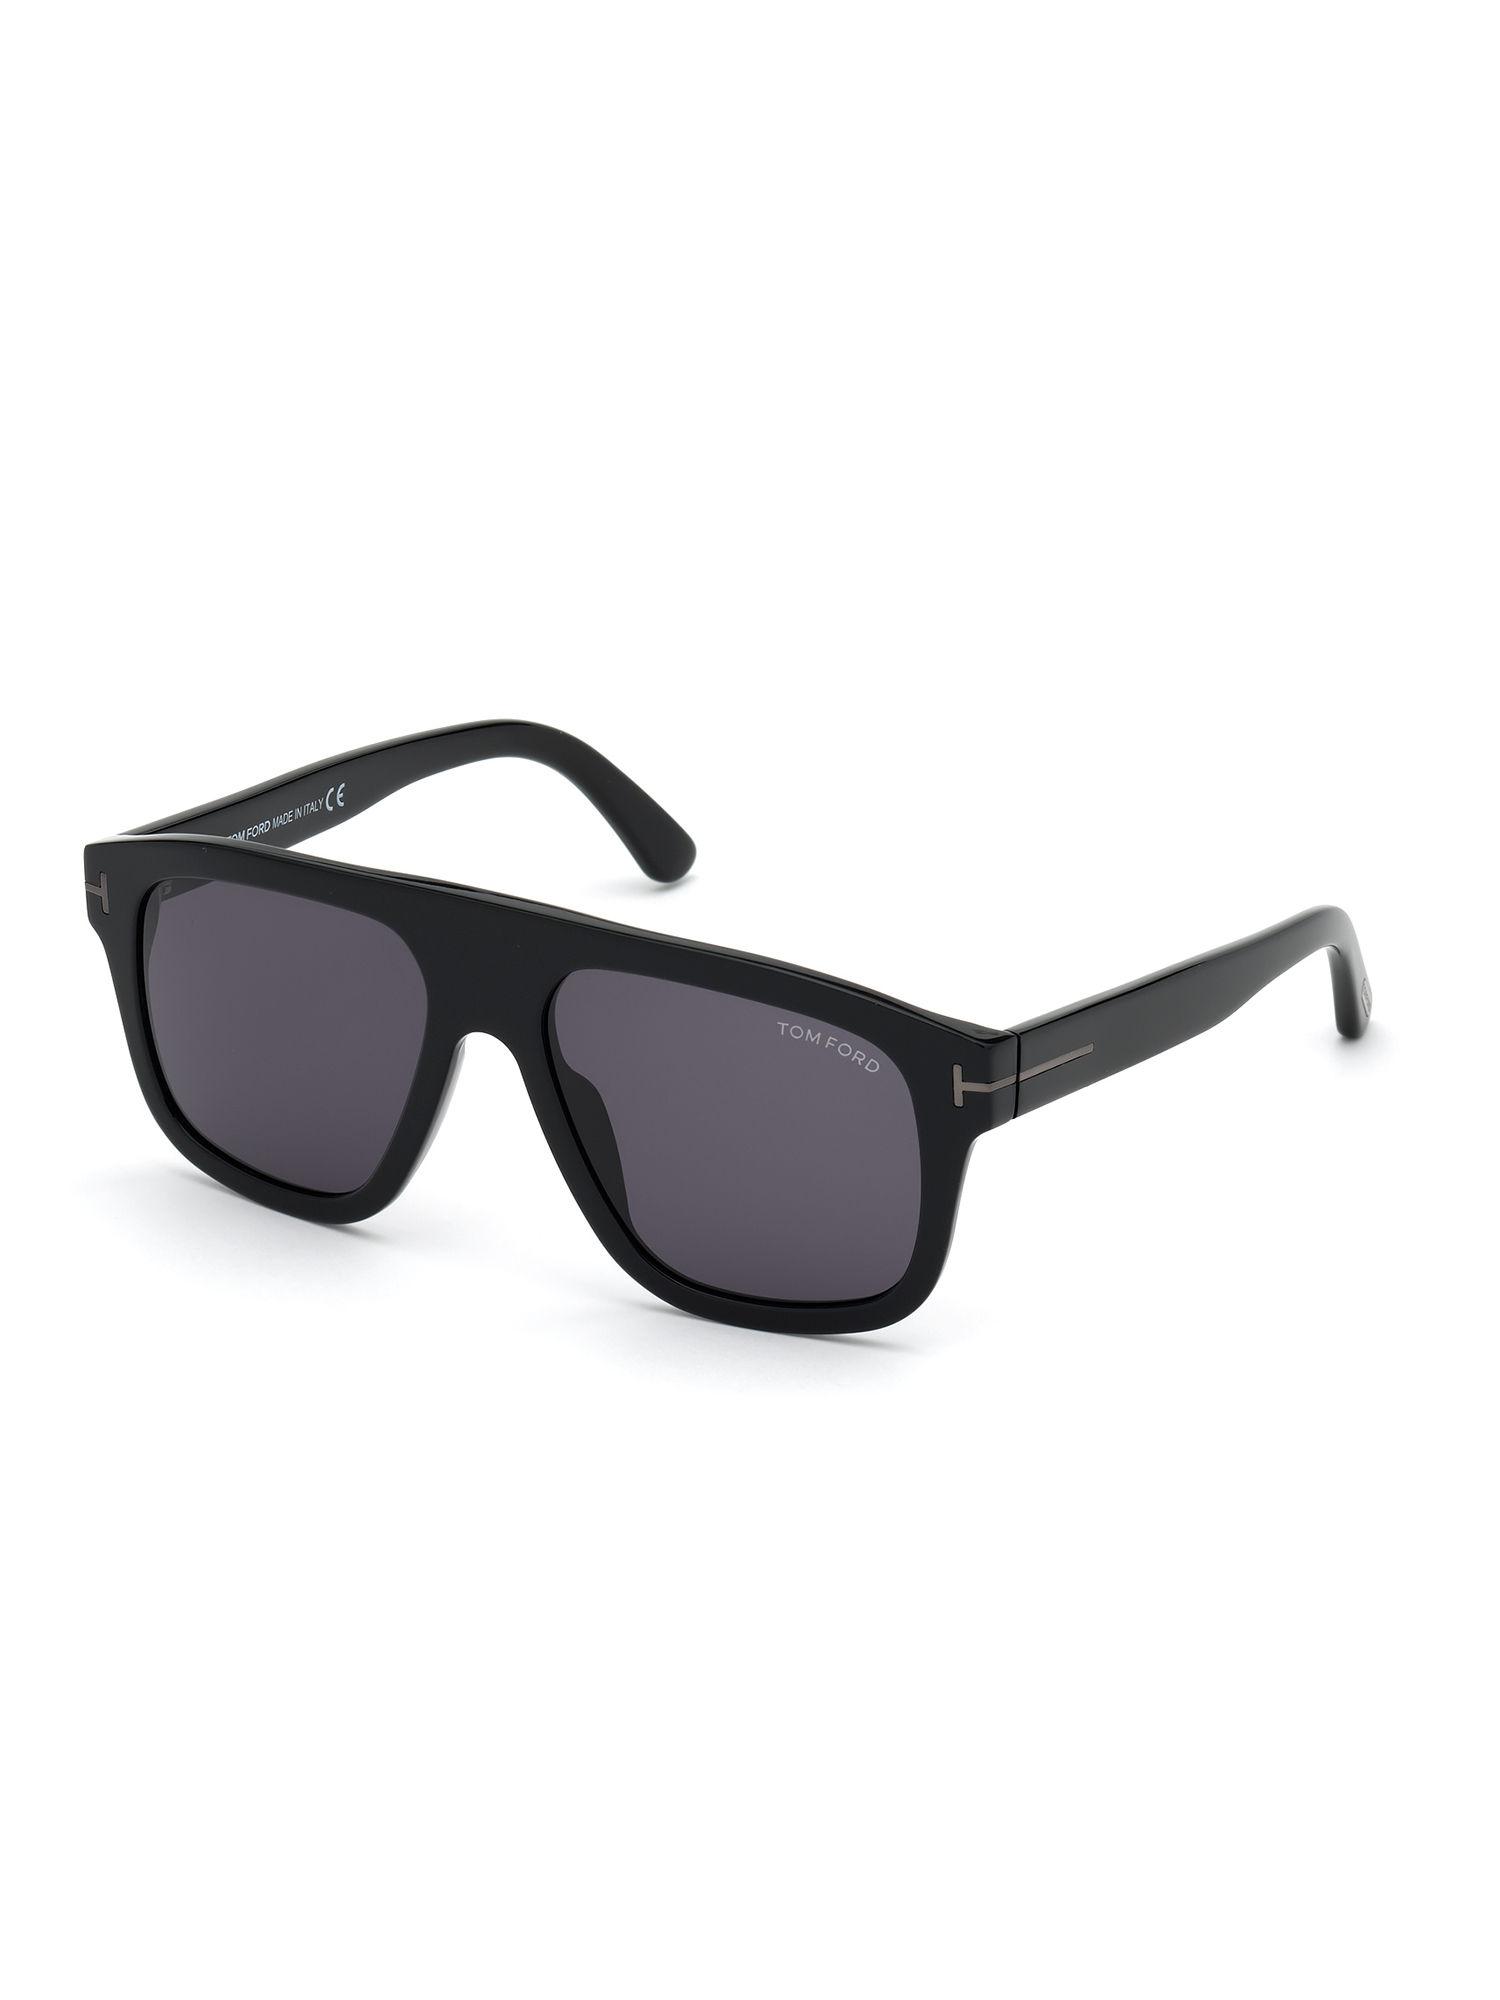 black plastic sunglasses ft0777-n 56 01a